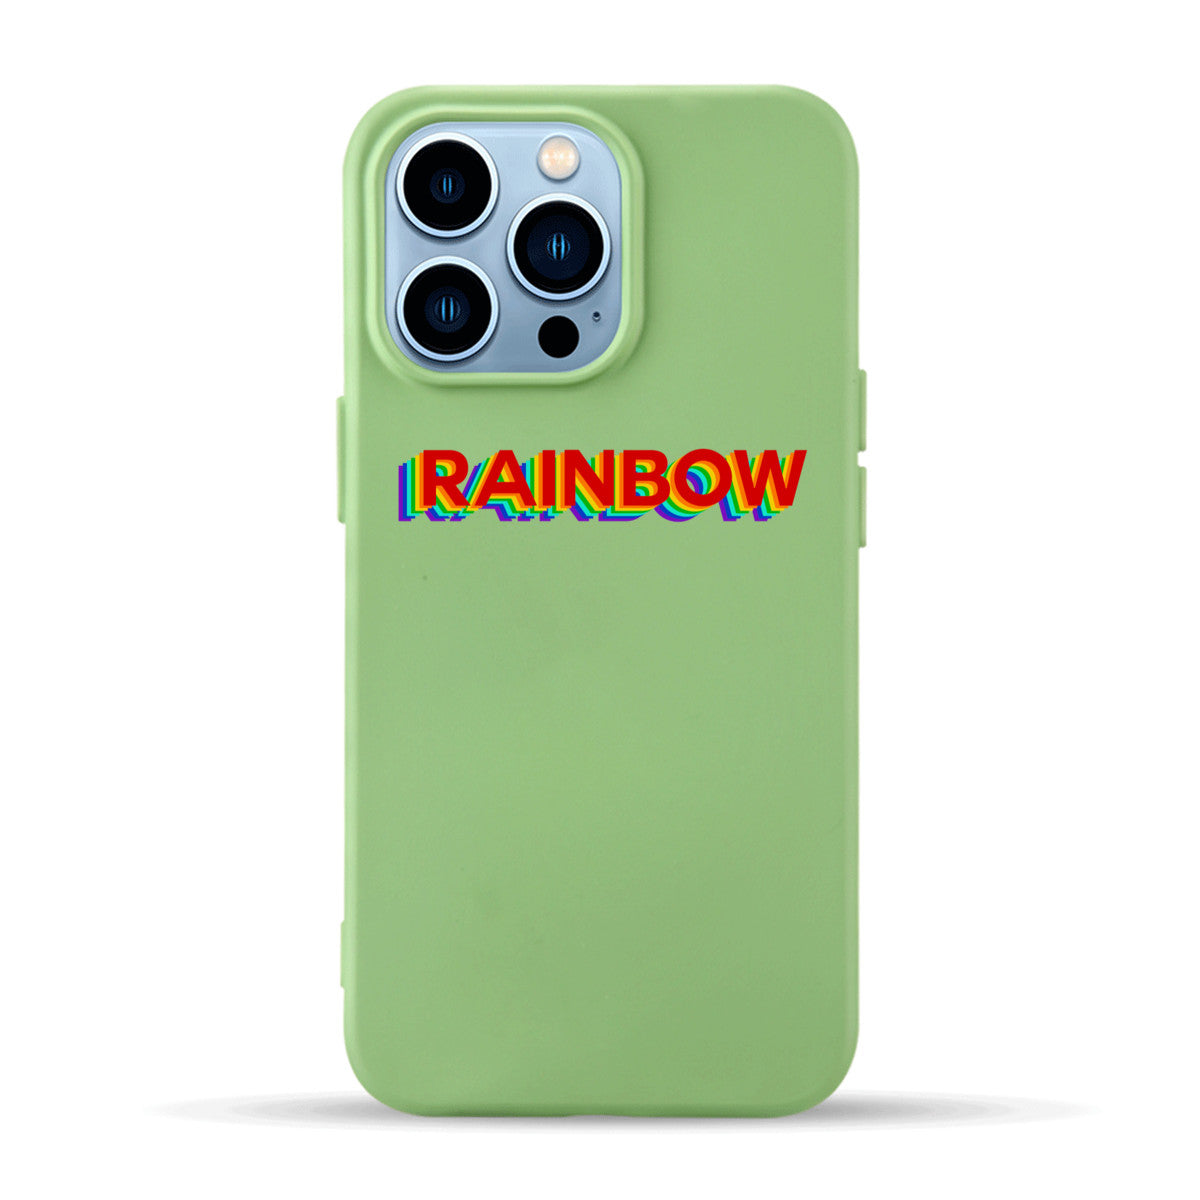 RAINBOW - iPhone Case